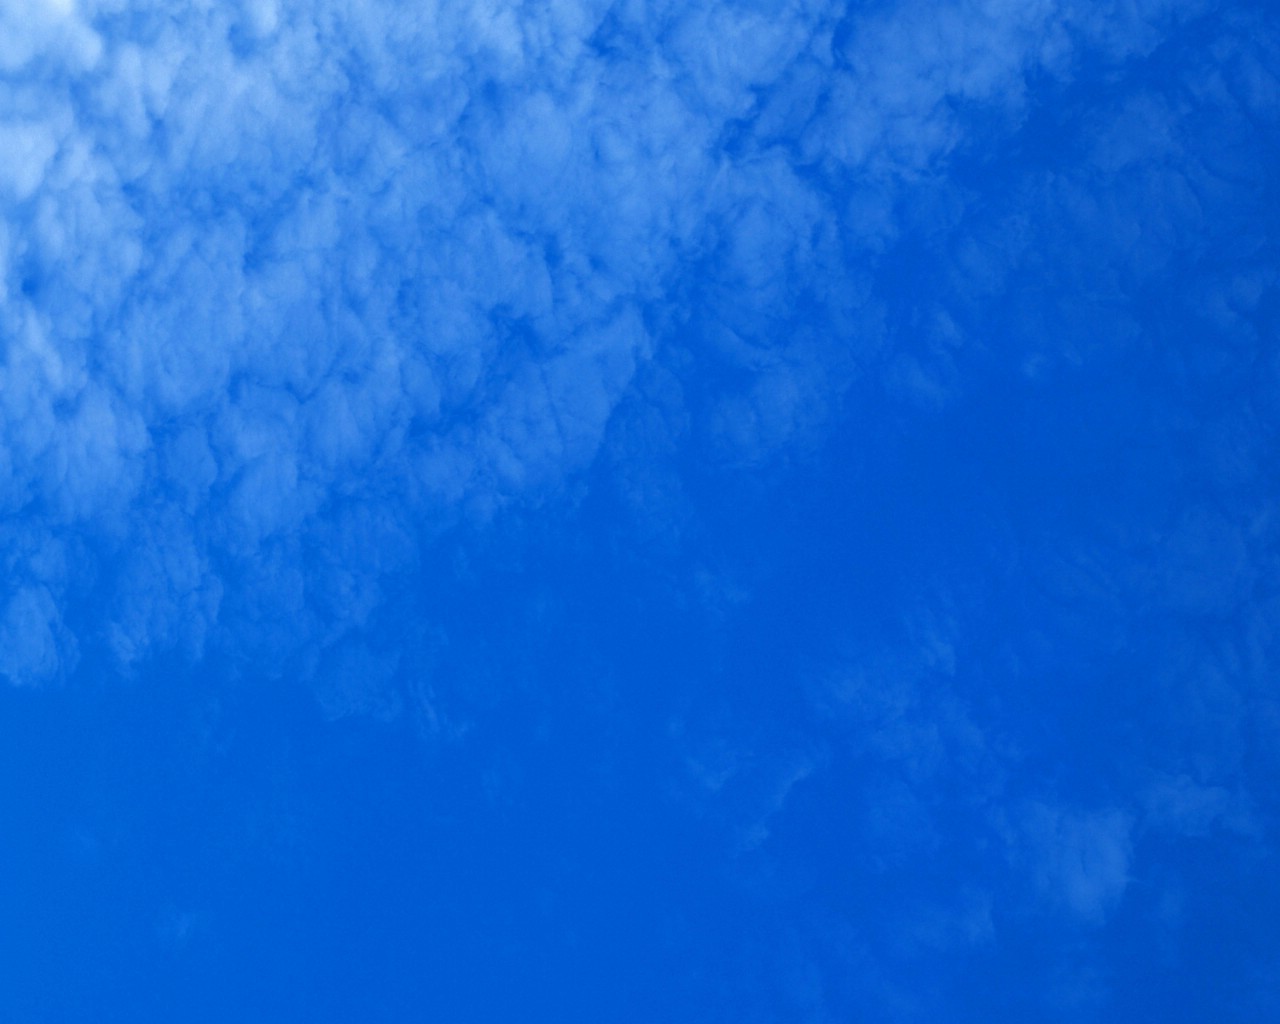 壁纸1280x1024 白云朵朵 蓝天白云壁纸壁纸 蔚蓝天空-蓝天白云壁纸壁纸 蔚蓝天空-蓝天白云壁纸图片 蔚蓝天空-蓝天白云壁纸素材 风景壁纸 风景图库 风景图片素材桌面壁纸